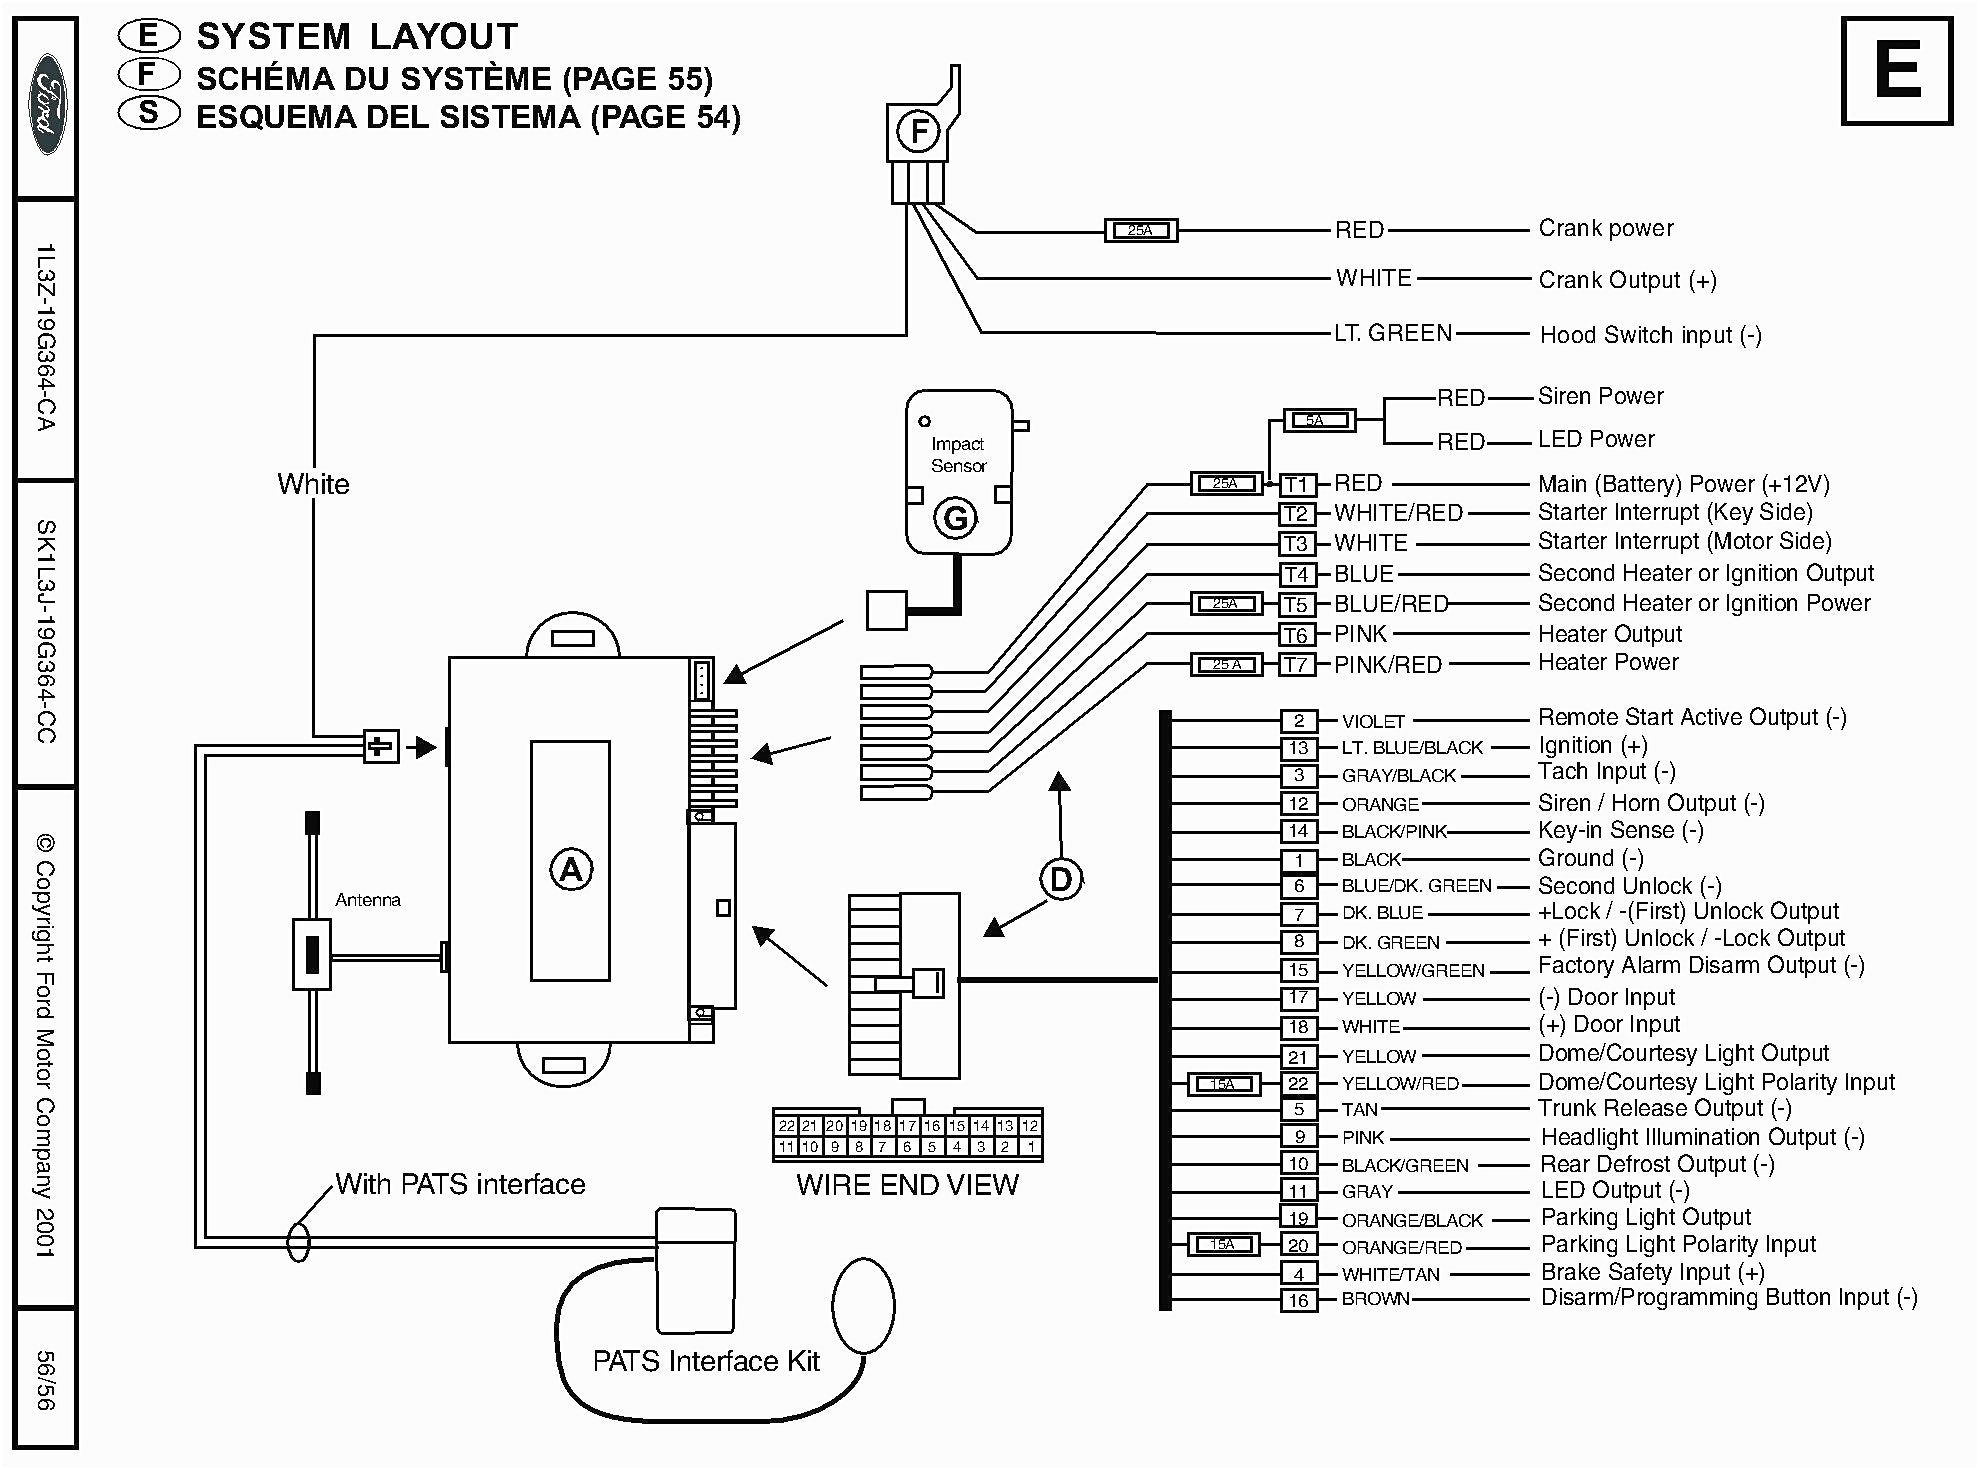 daewoo remote starter diagram wiring diagrams data daewoo remote starter diagram